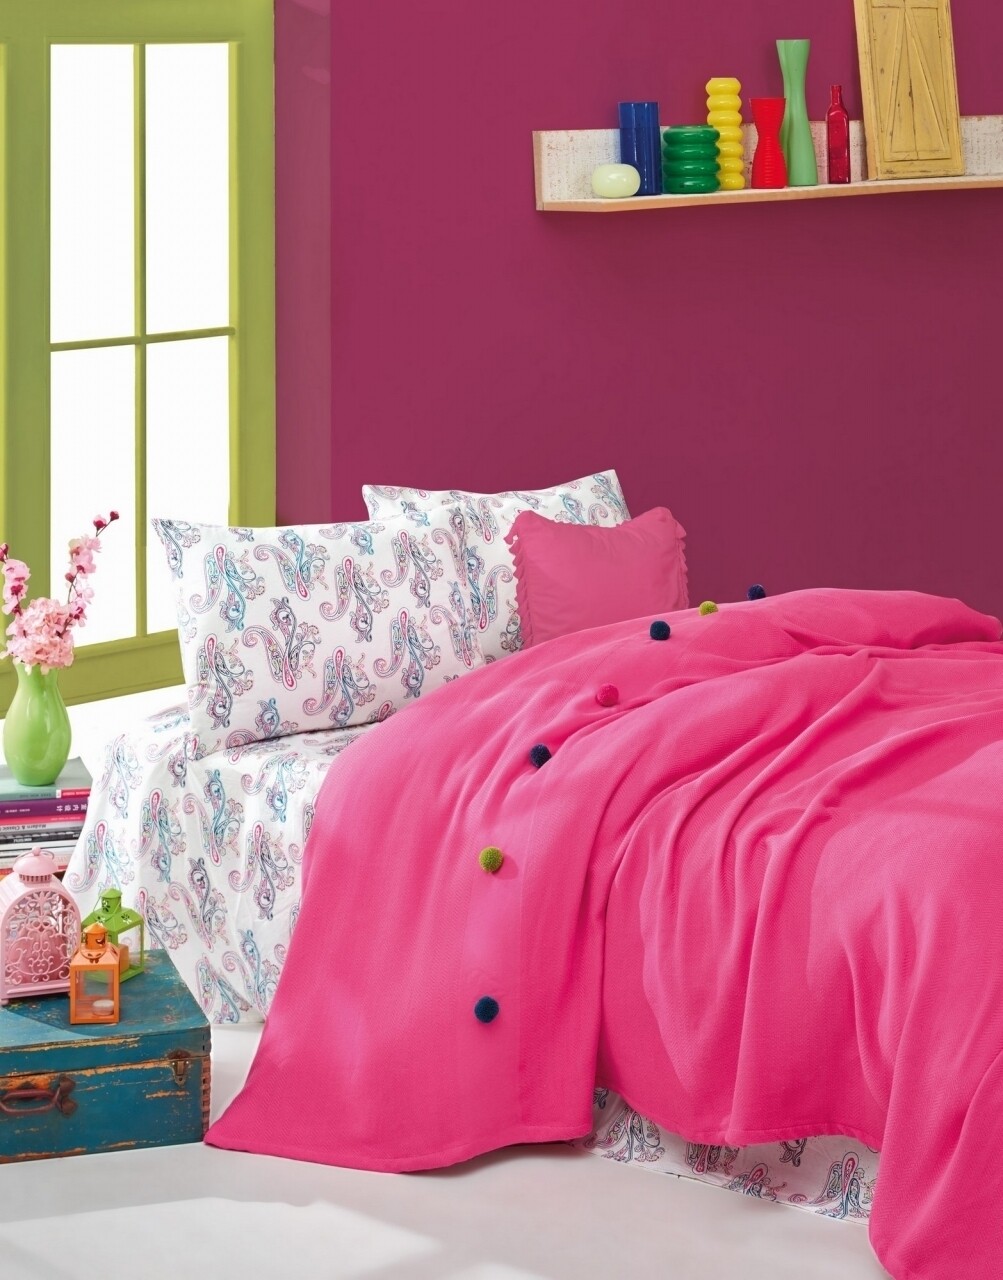 Cotton box ágynemű+takaró garnitúra egy személy részére fancy fuchsia, pamut doboz, 3 db, 160 x 230 cm, 100% pamut tartó, rózsaszín